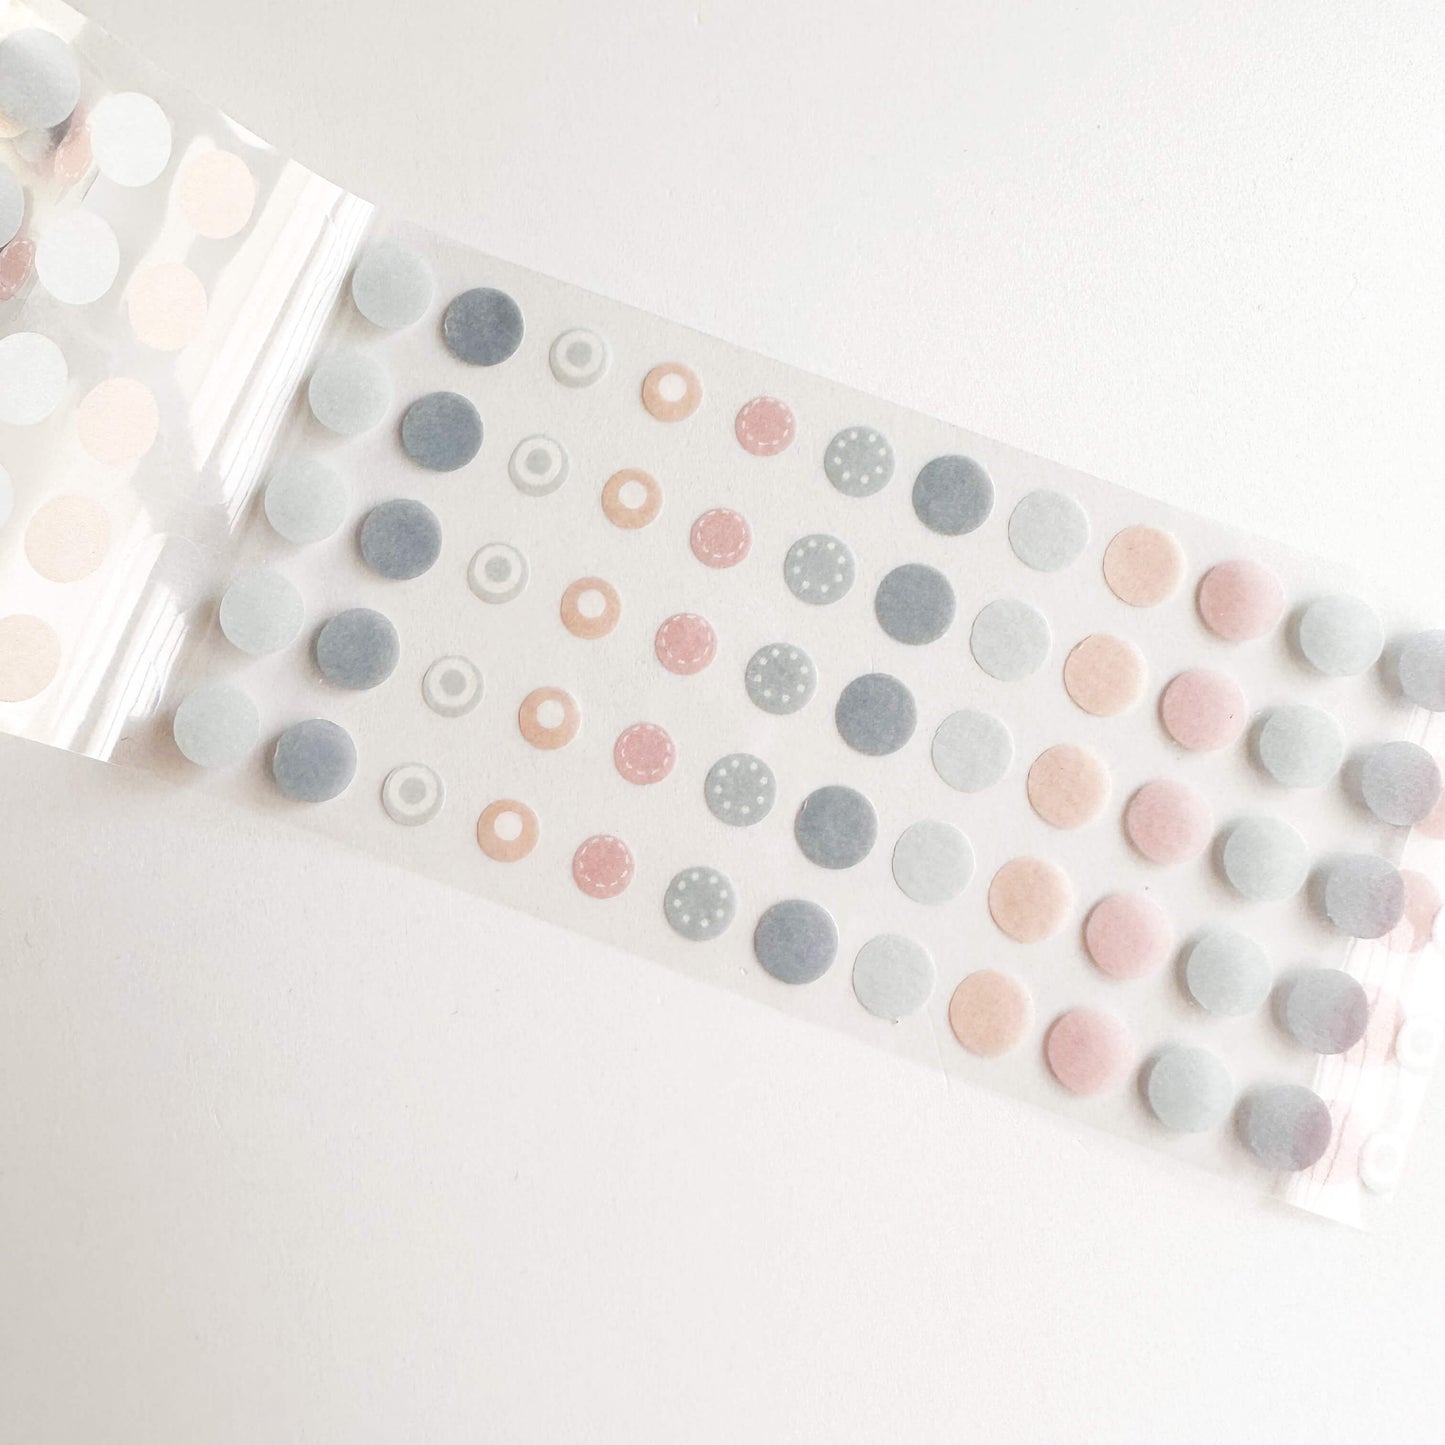 Washi dot sticker roll - Soft hues